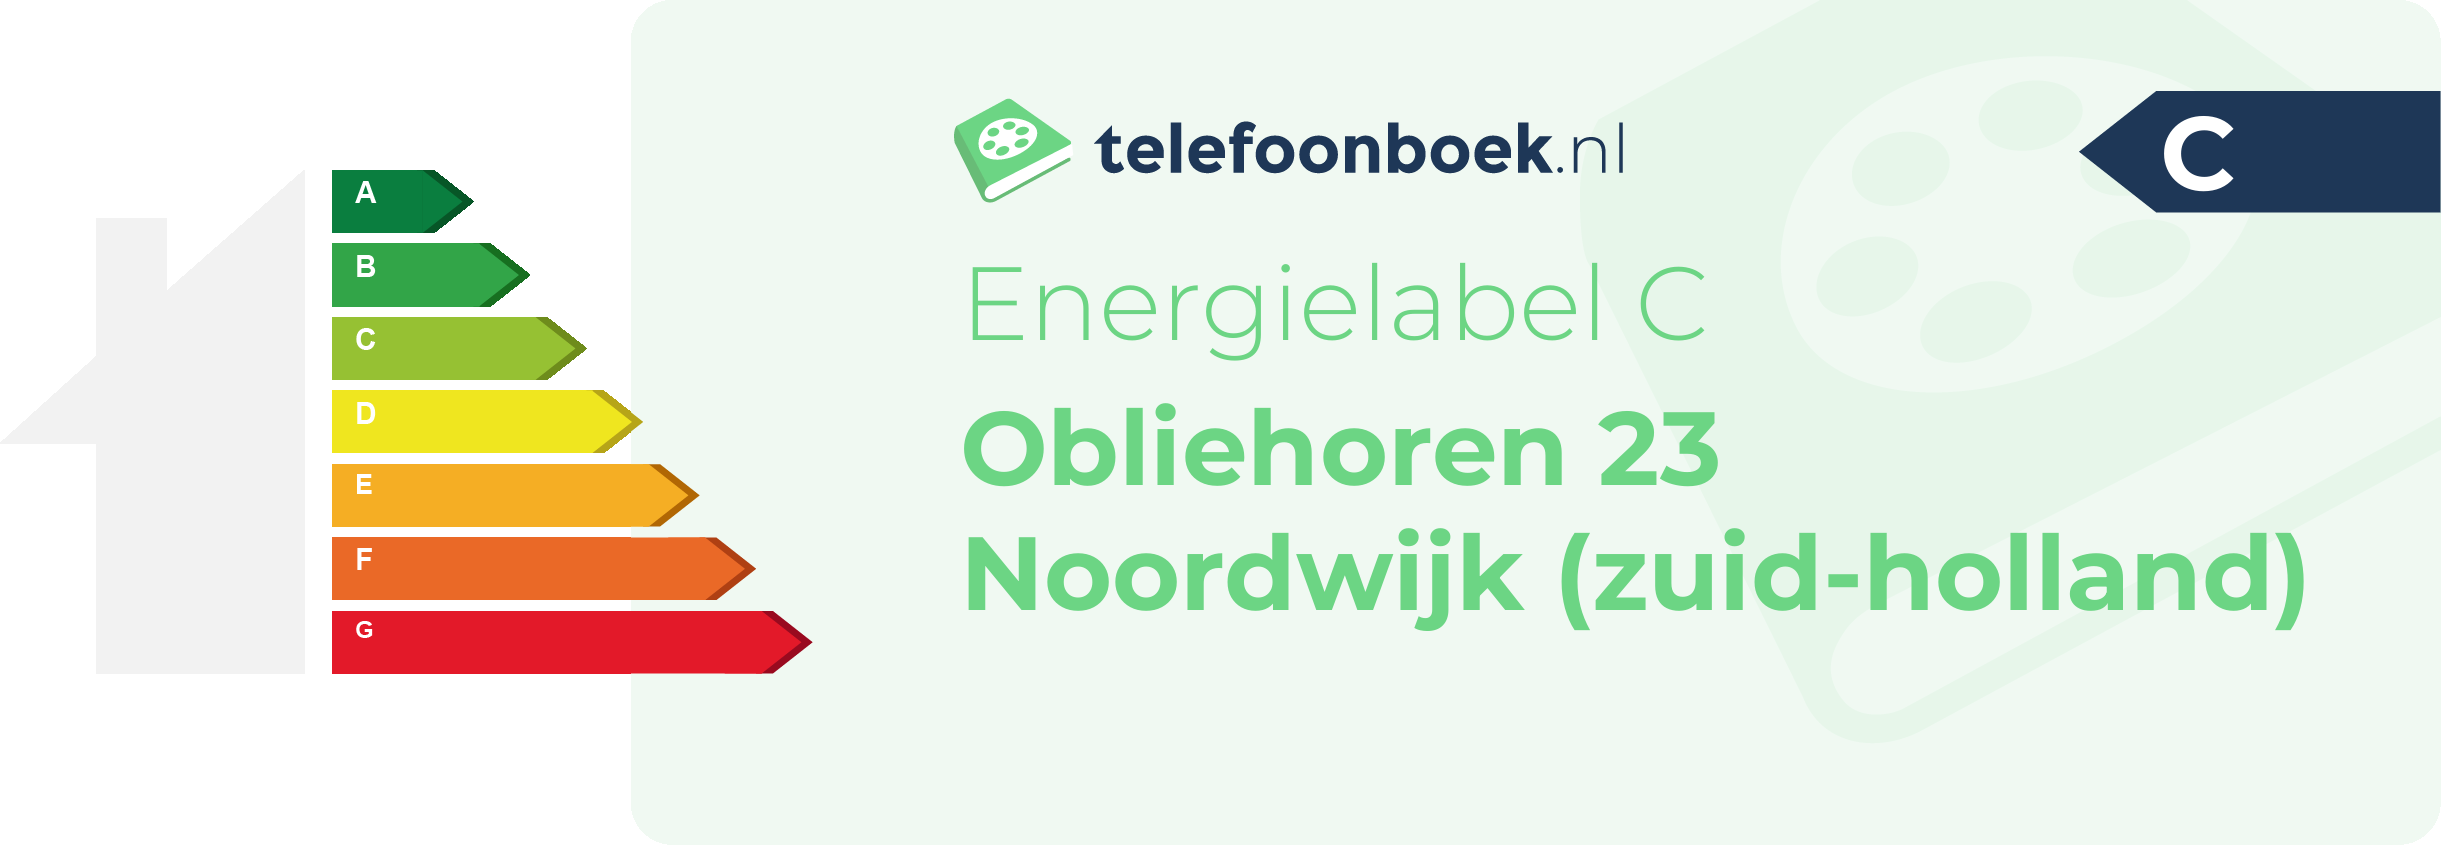 Energielabel Obliehoren 23 Noordwijk (Zuid-Holland)